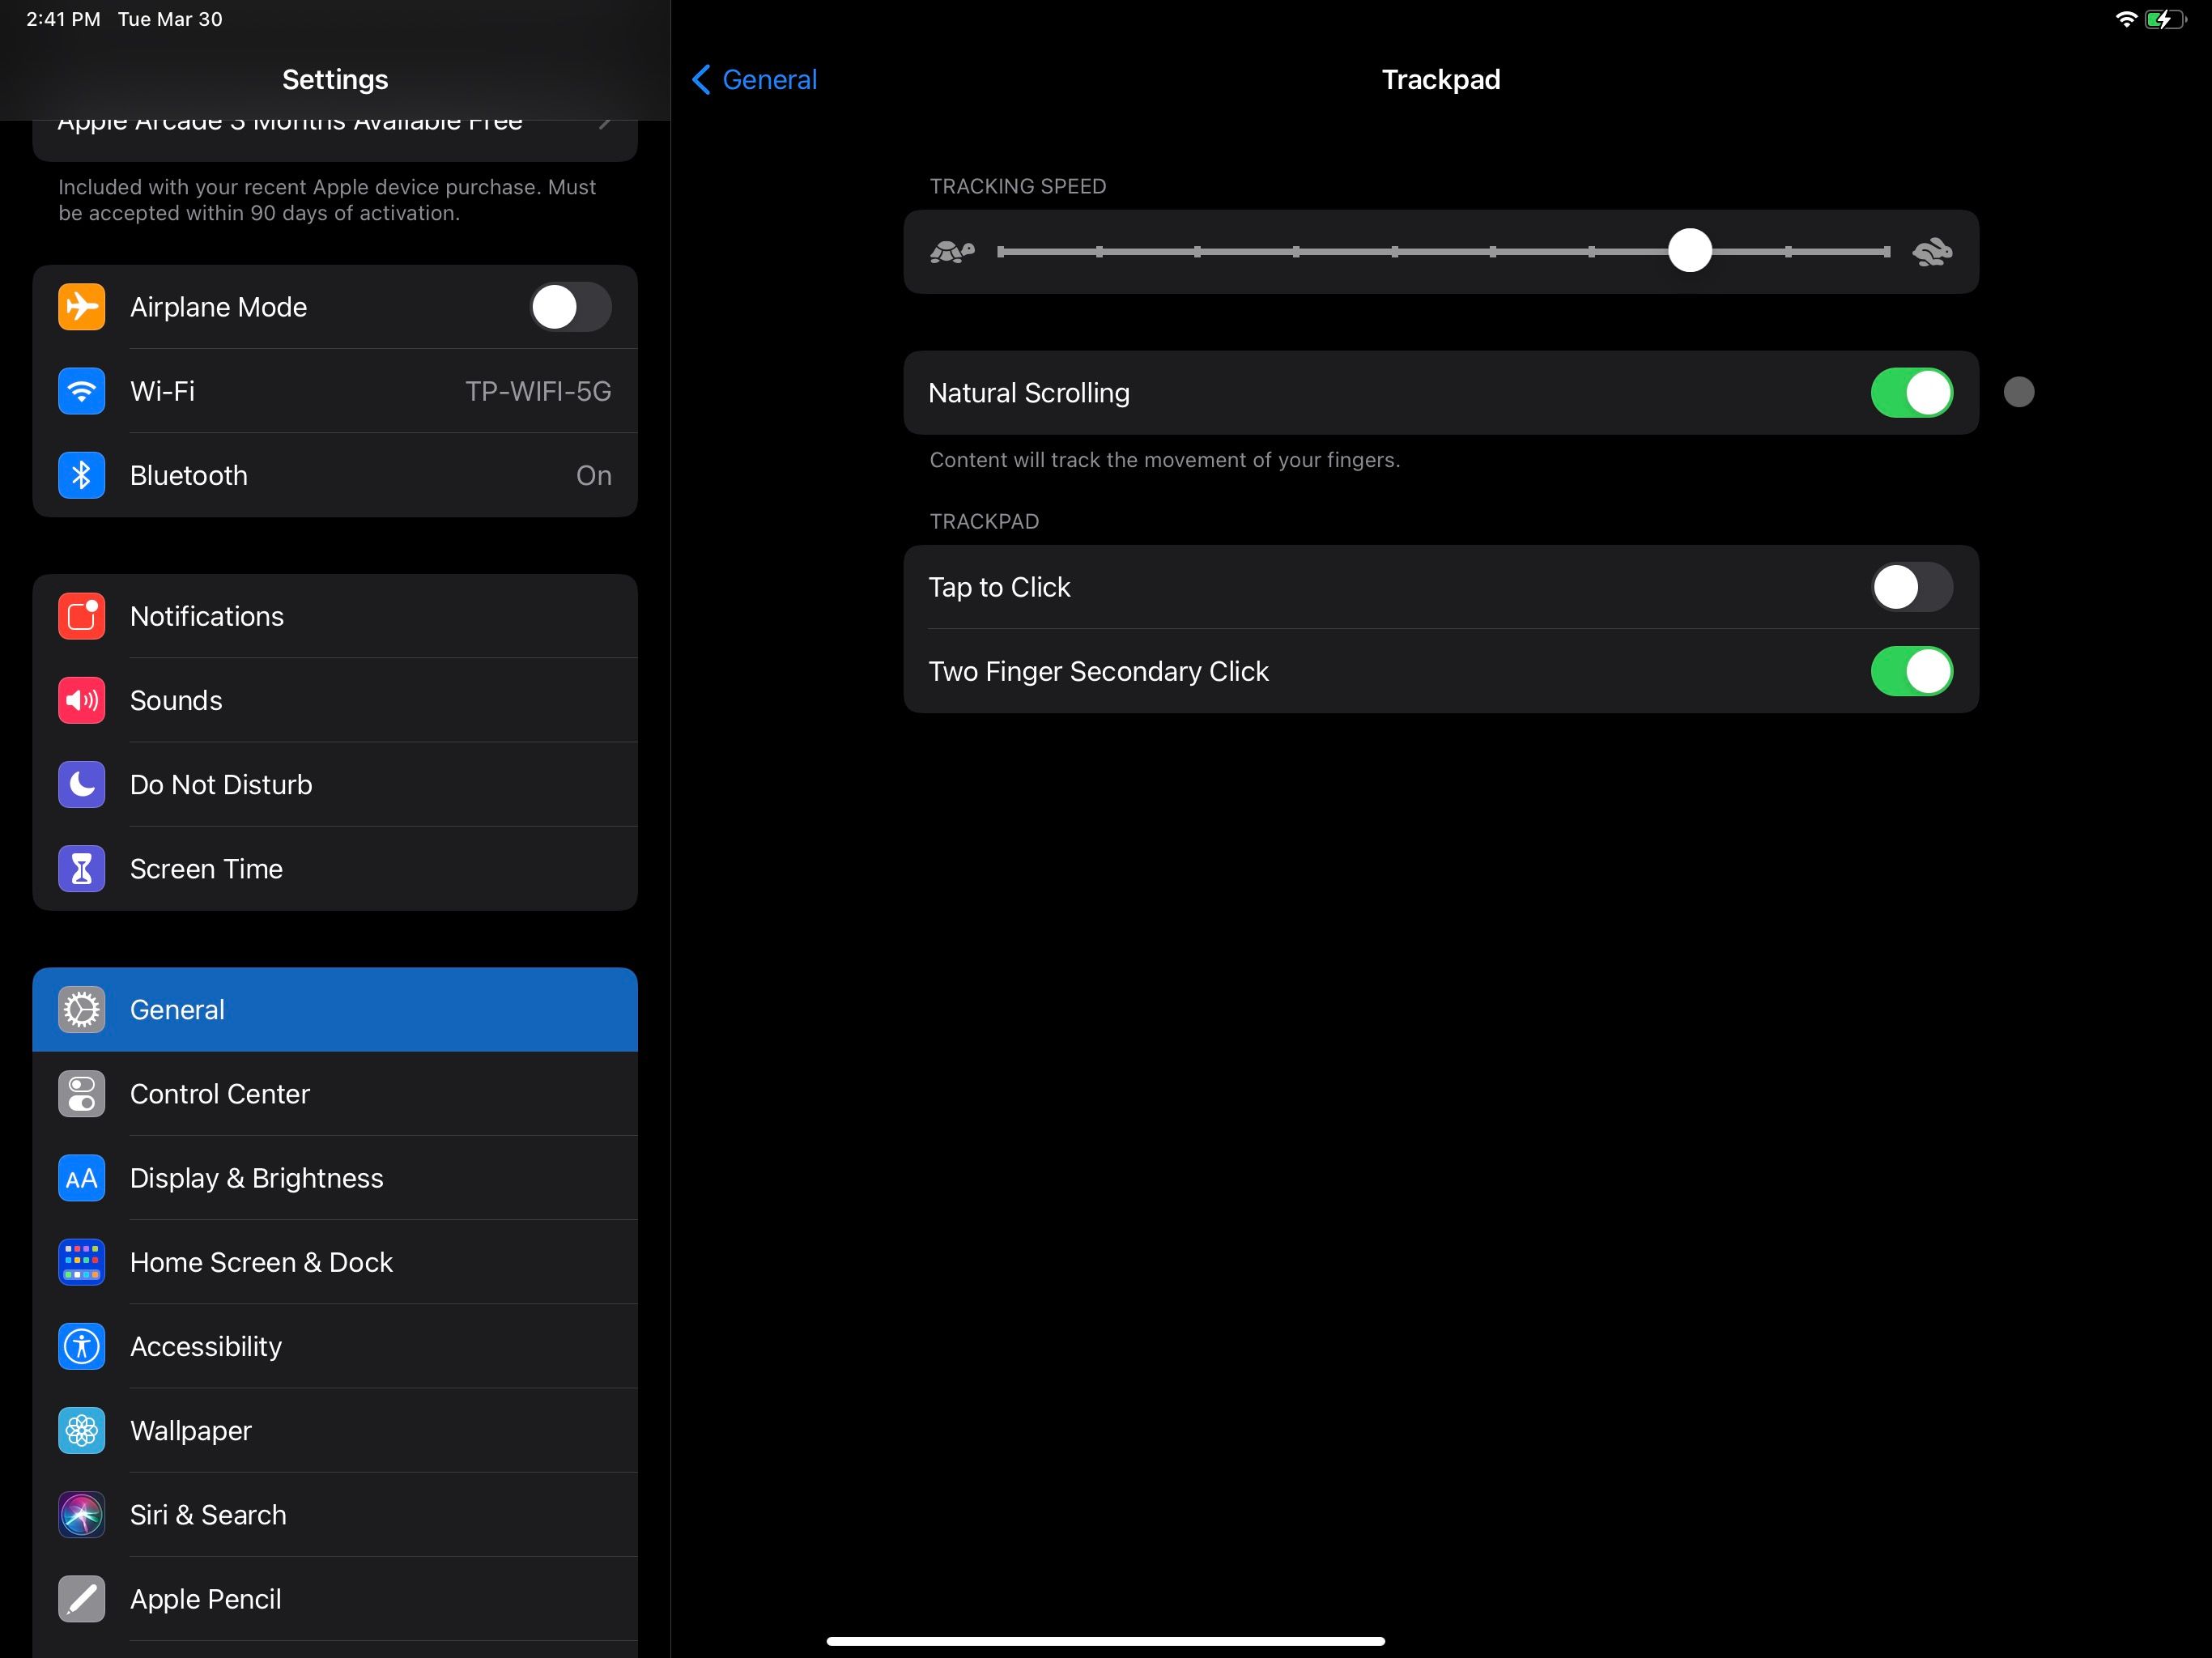 trackpad settings - Come collegare e utilizzare un trackpad con il tuo iPad